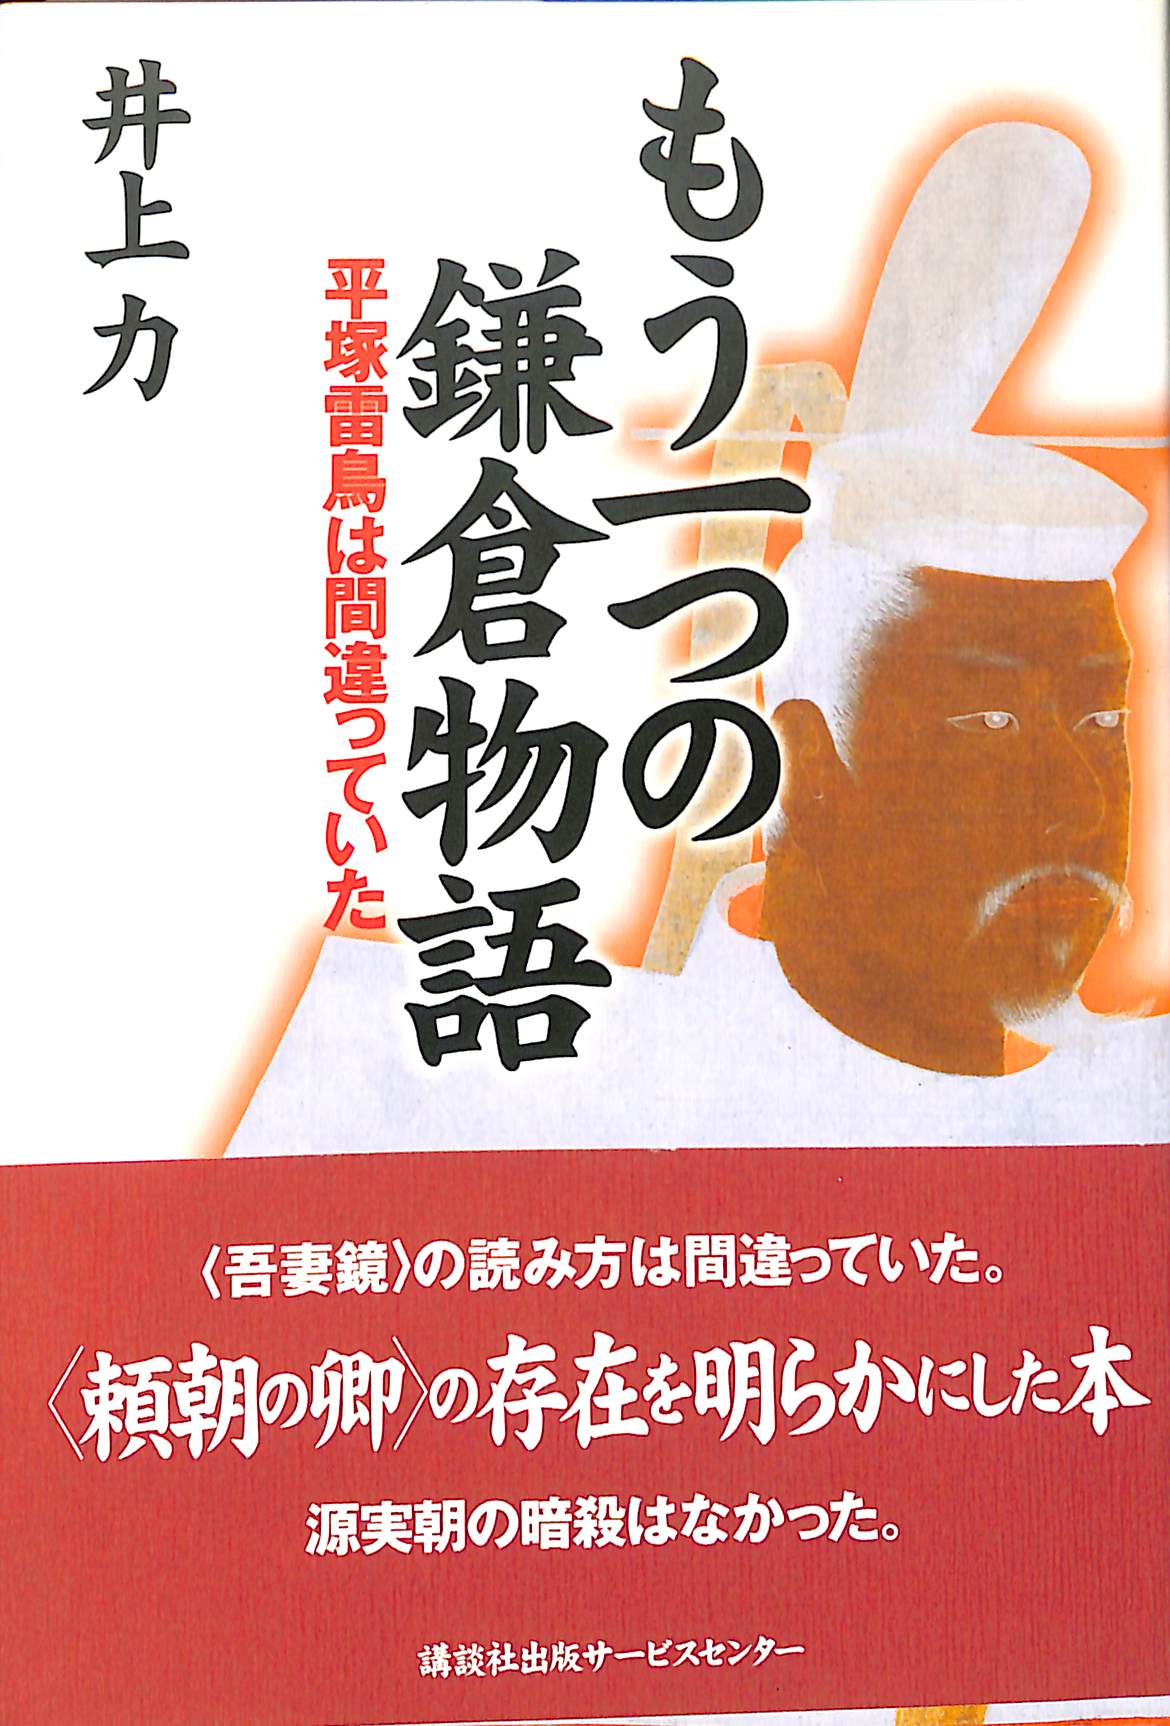 もう一つの鎌倉物語 平塚雷鳥は間違っていた 井上力 著 古本よみた屋 おじいさんの本 買います